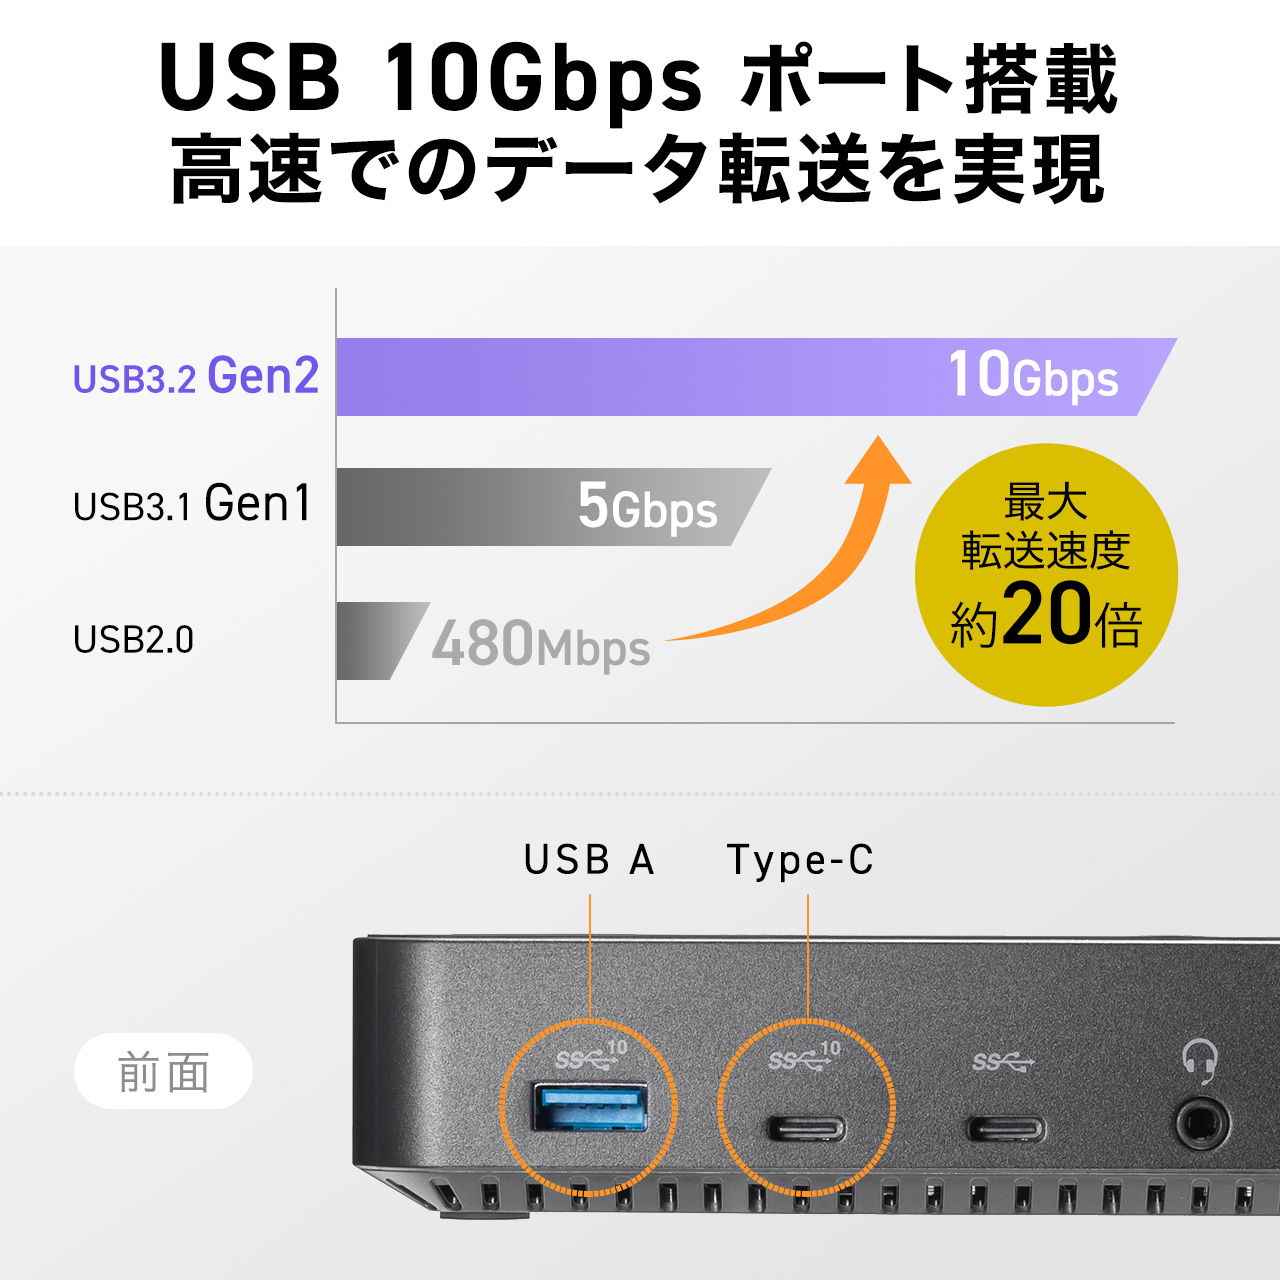 ドッキングステーション HDMI3つ トリプルディスプレイ 4K 3画面 10in1 Win mac対応 400-VGA023